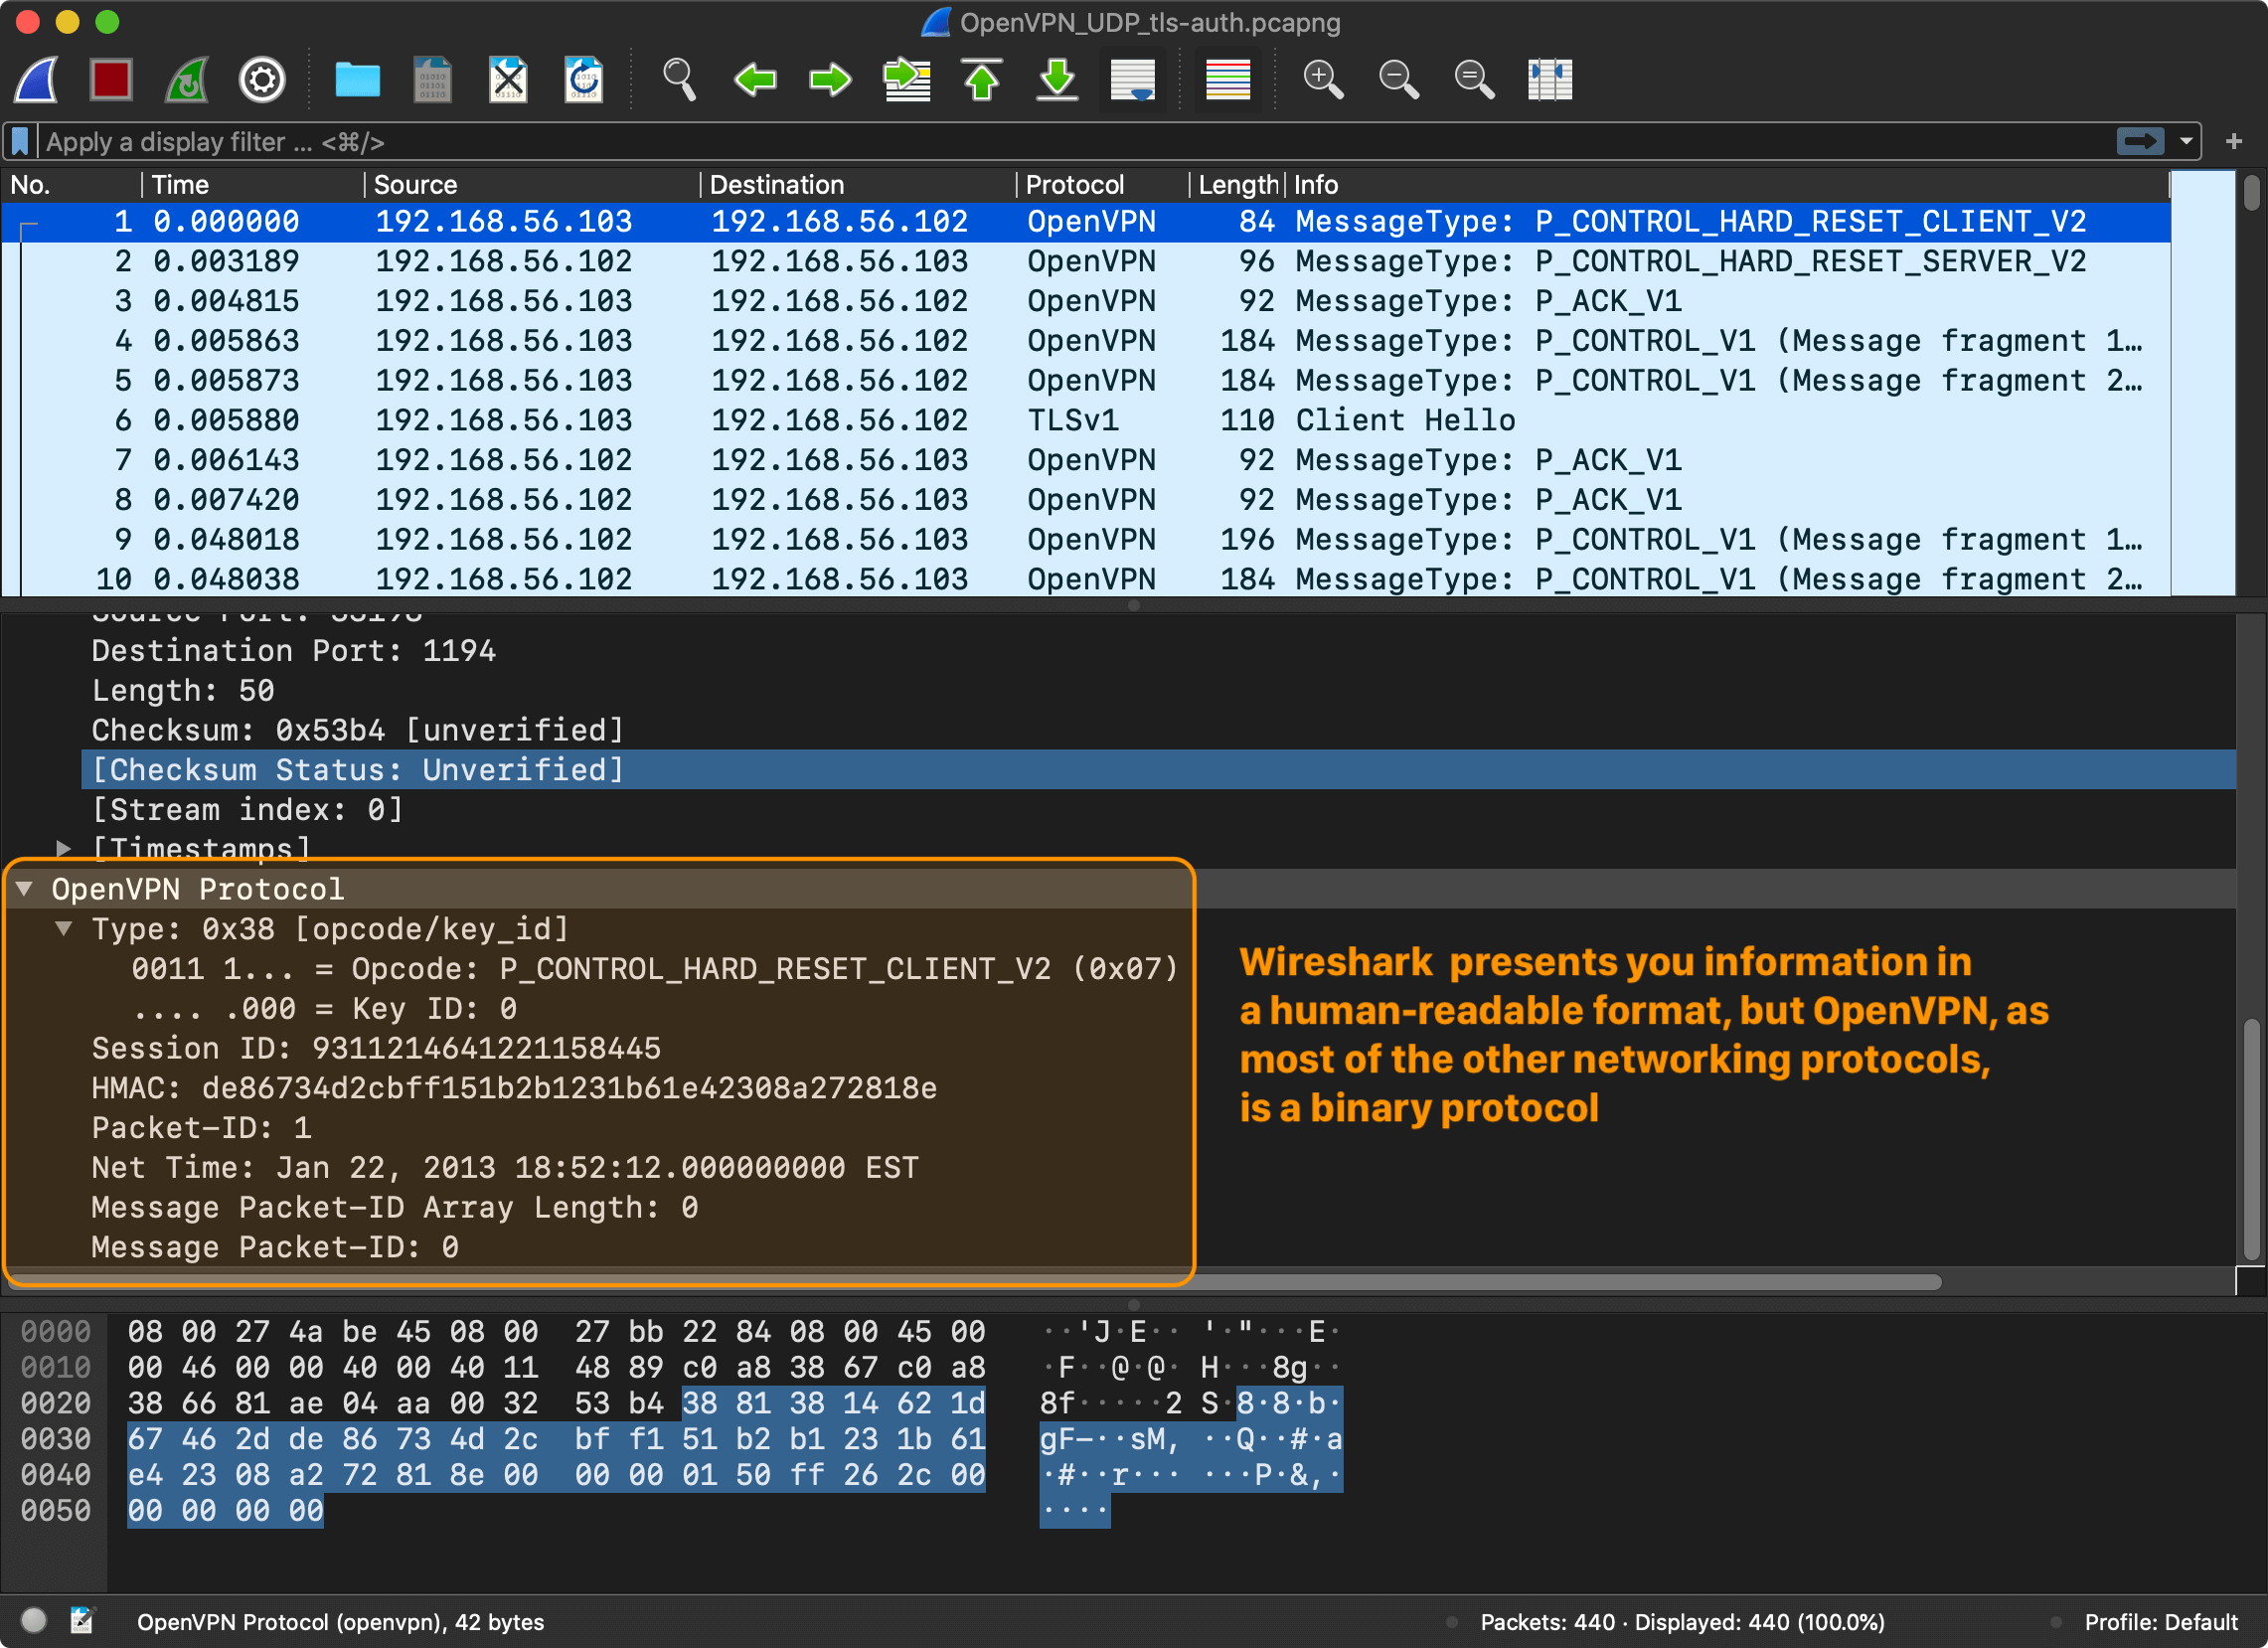 Wireshark capture: OpenVPN client reset